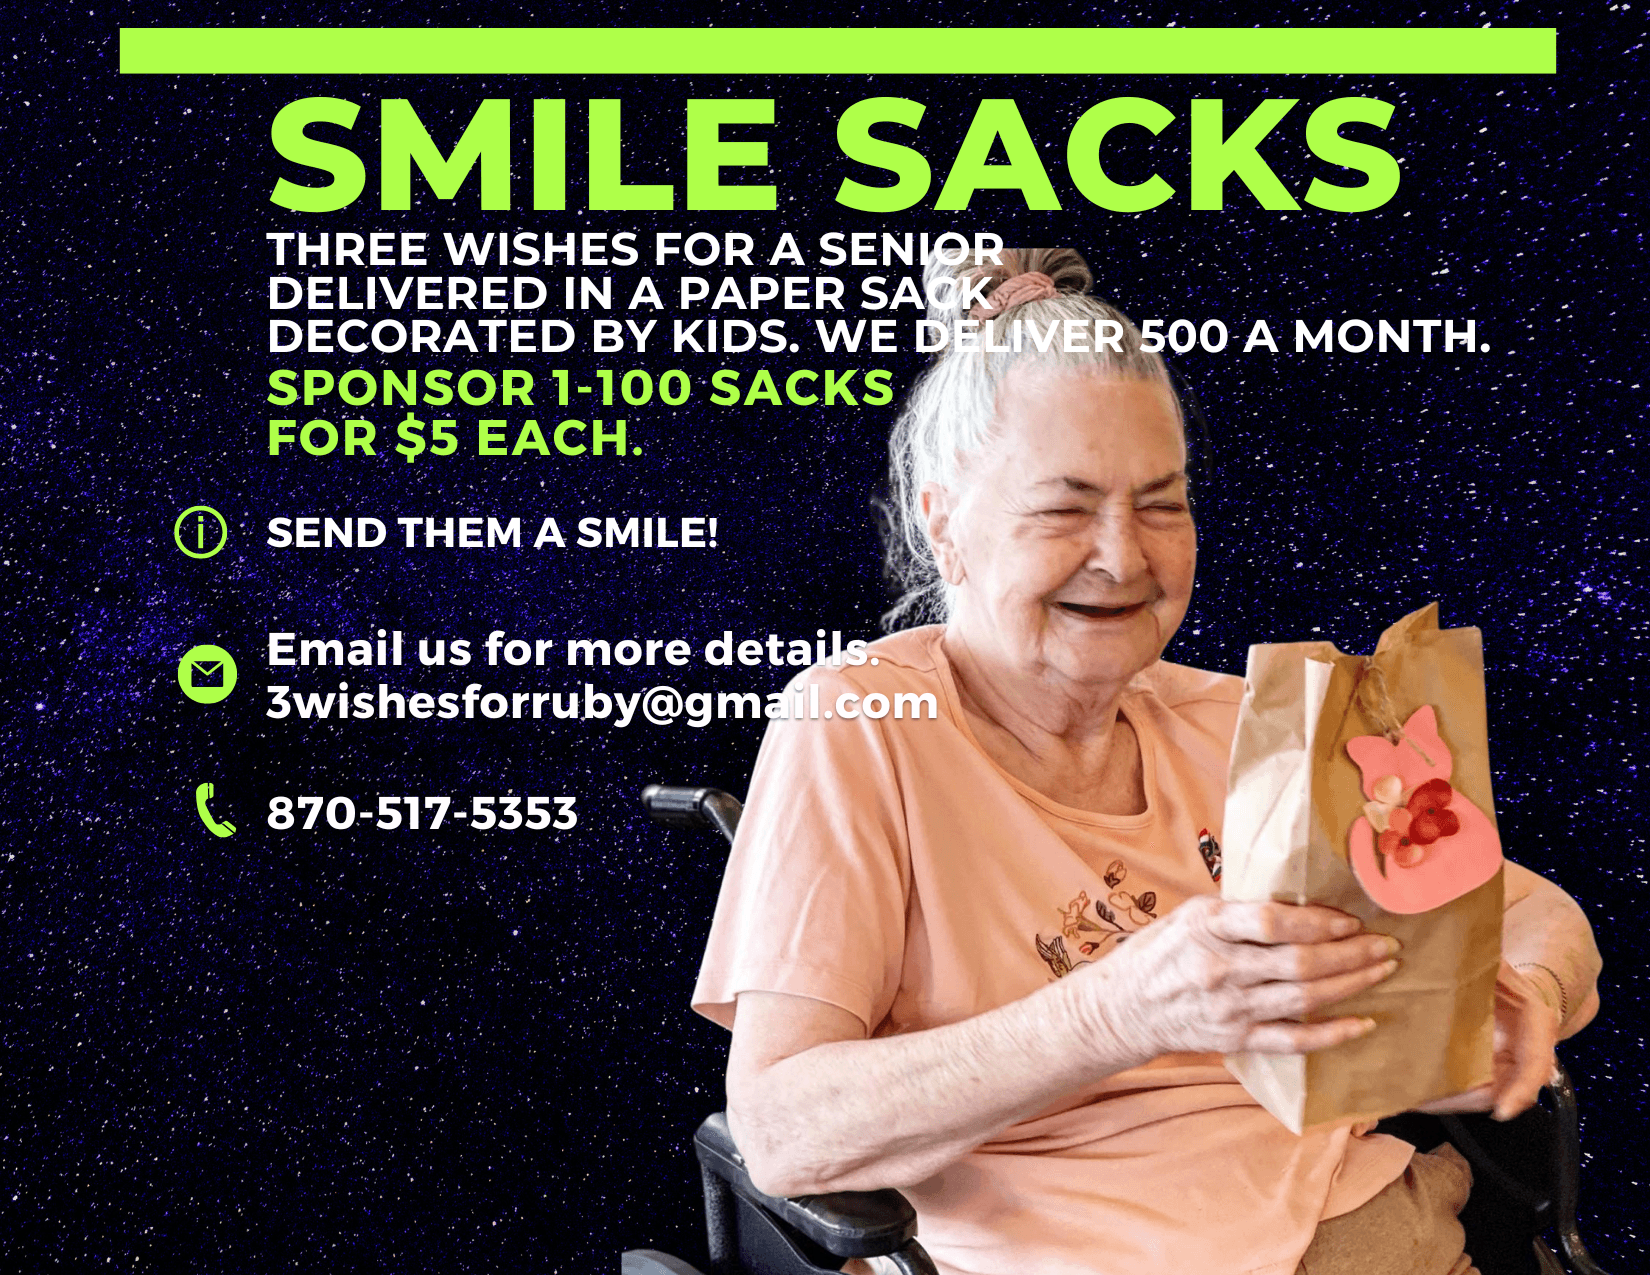 Smile Sacks for Seniors